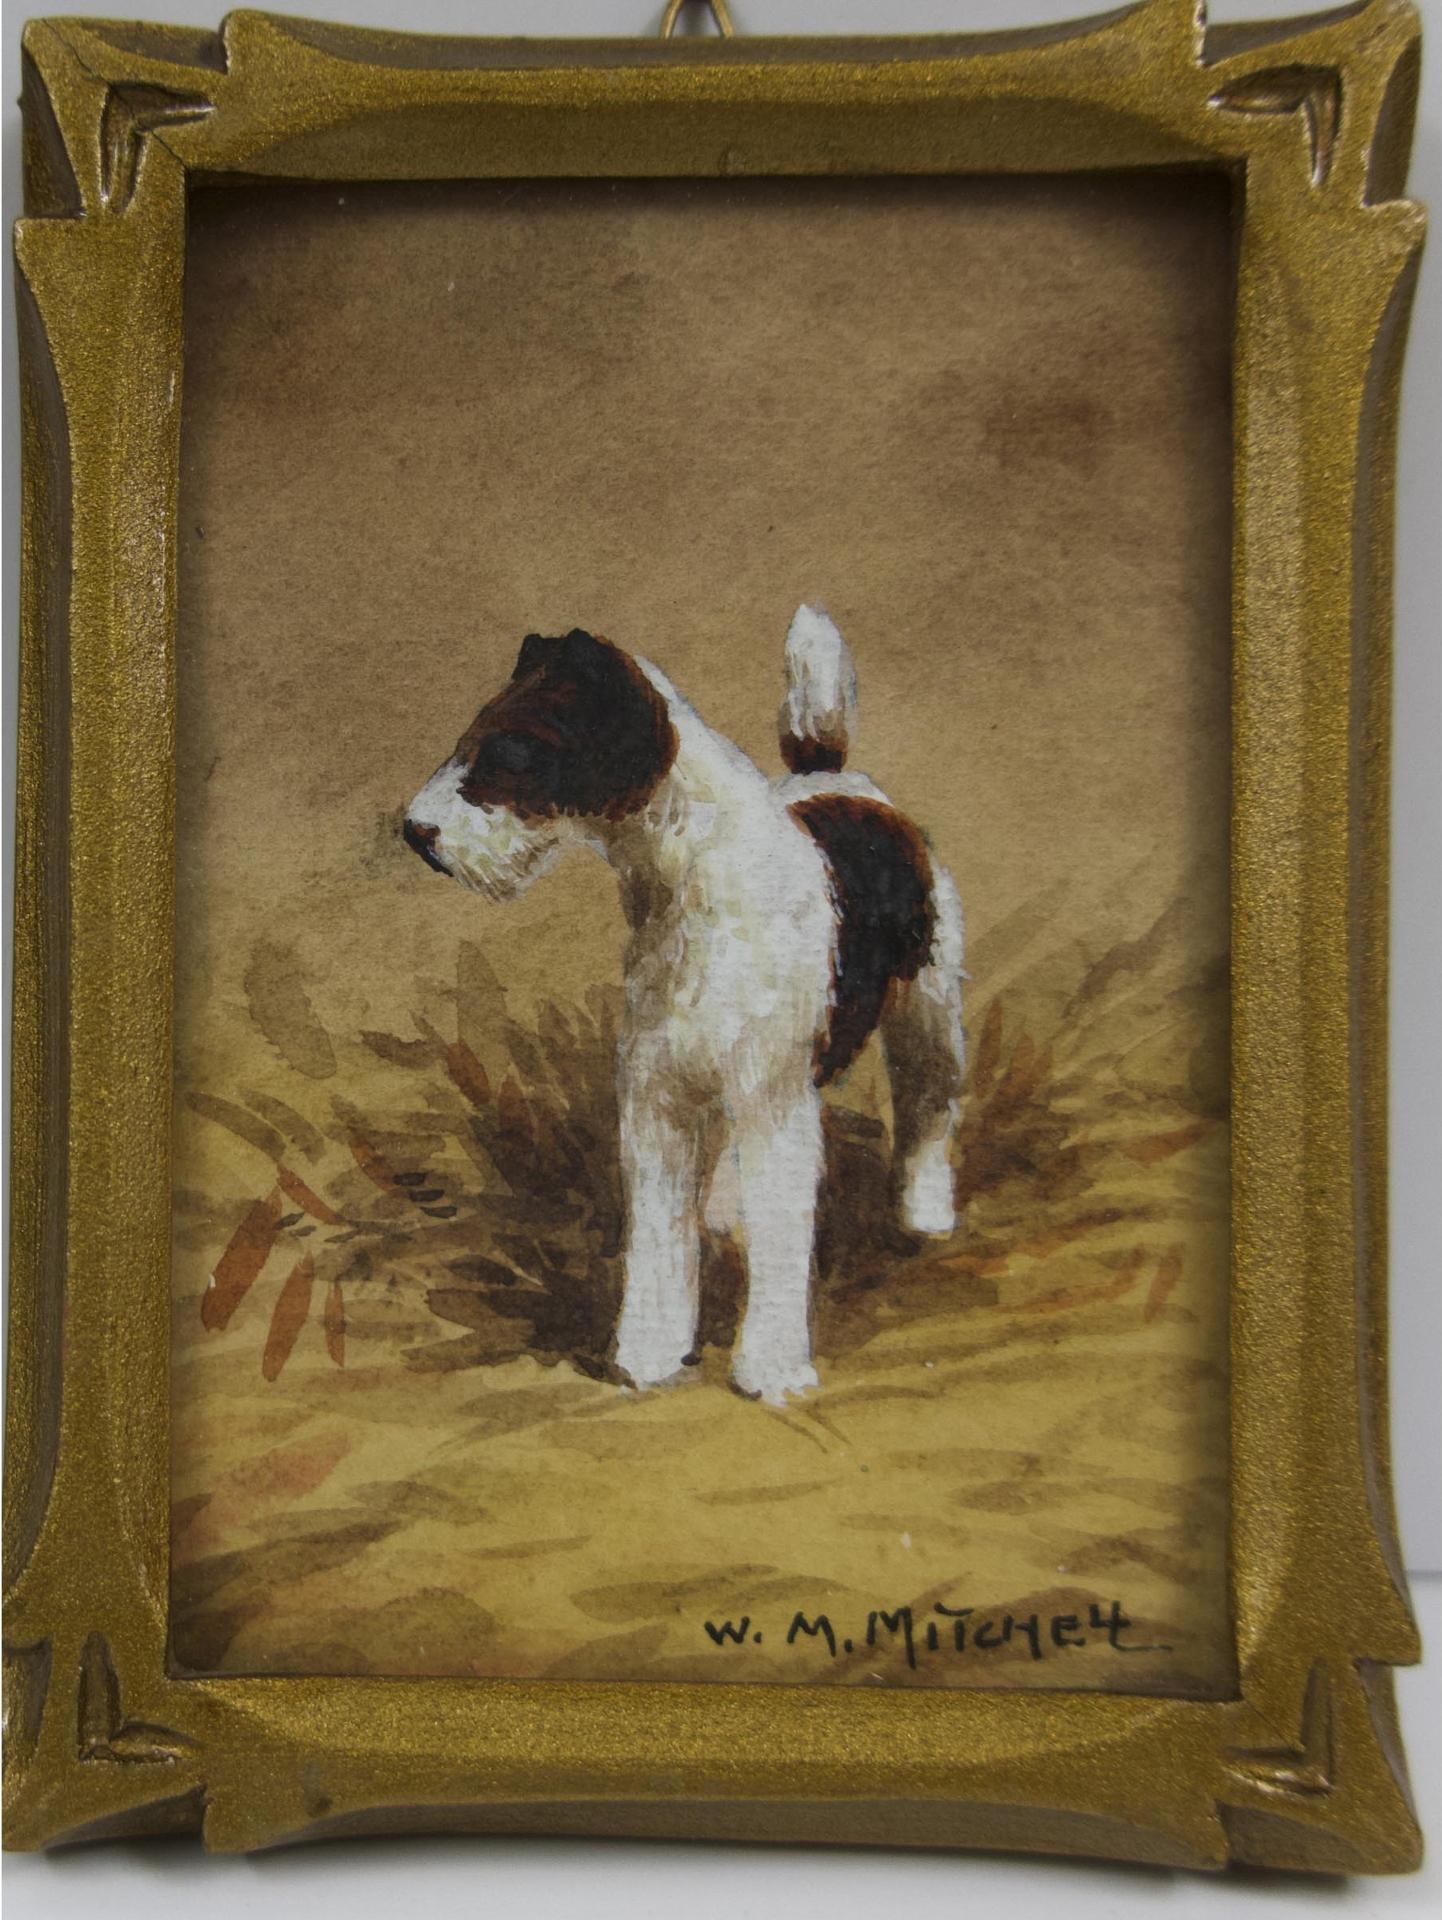 Willard Morse Mitchell (1879-1955) - Untitled (Terrier Dog)